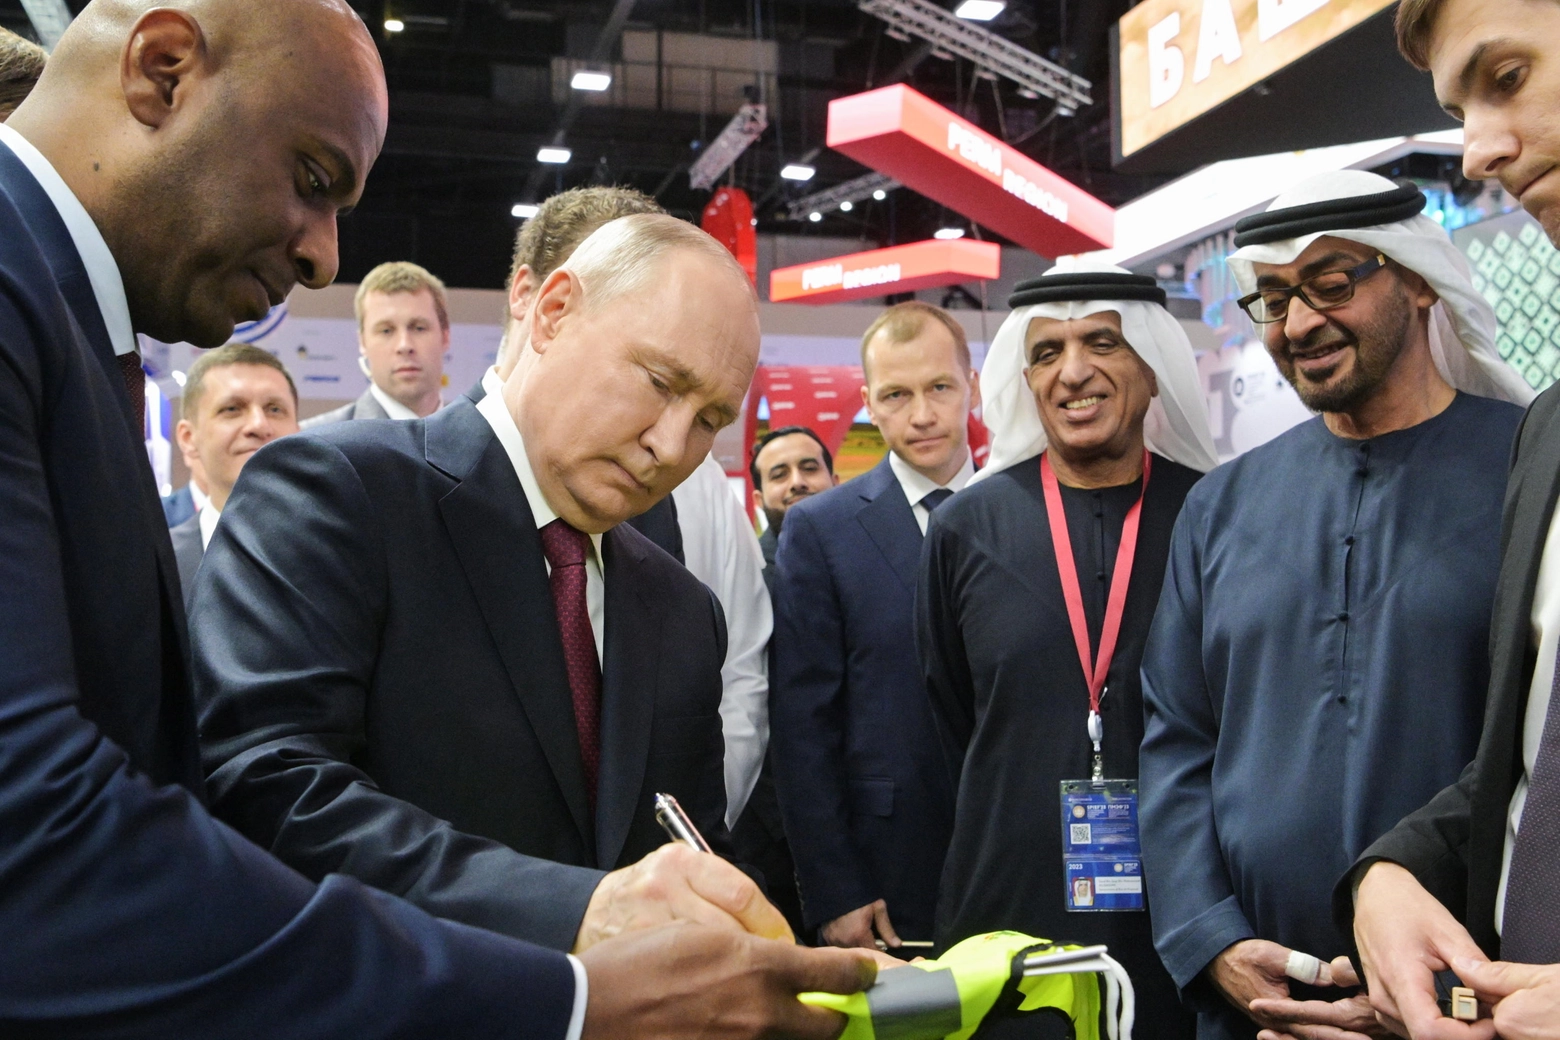 Putin con il presidente degli Emirati Arabi Uniti Mohamed bin Zayed Al Nahya al Forum economico internazionale di San Pietroburgo (Ansa)